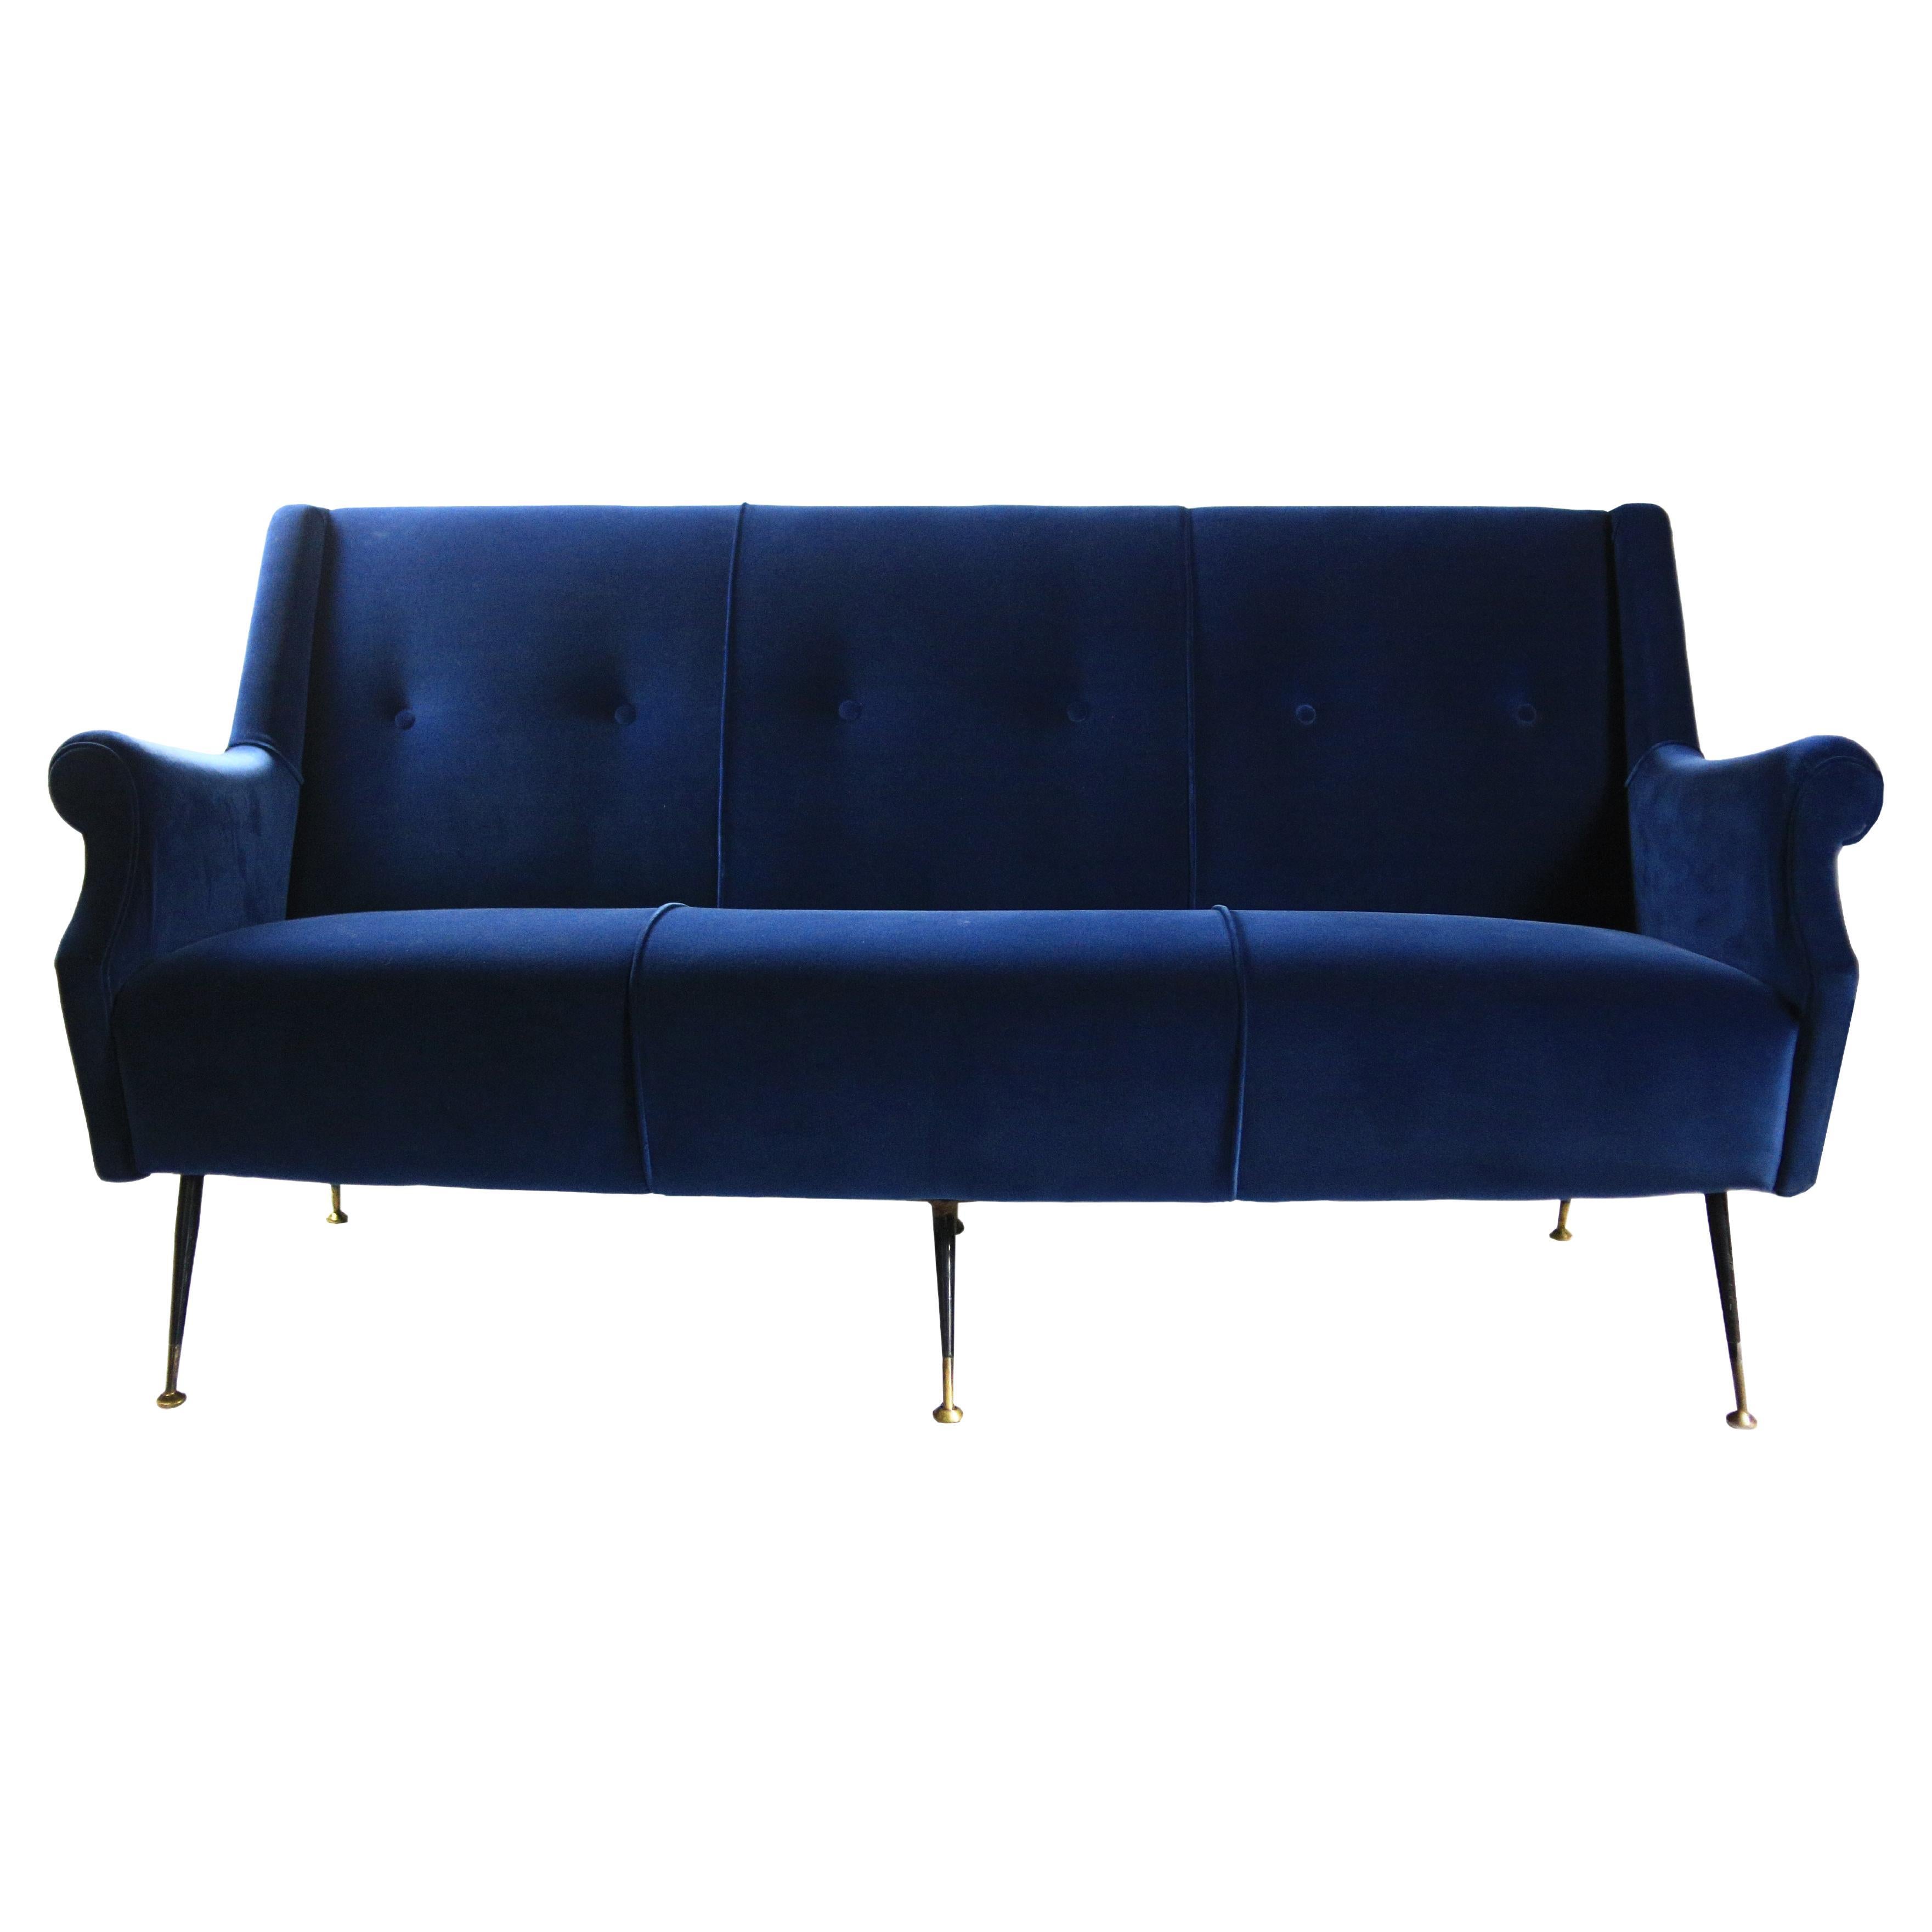 Mid-Century Modern Blue Velvet and Brass Sofa, Italian Design, 1950s